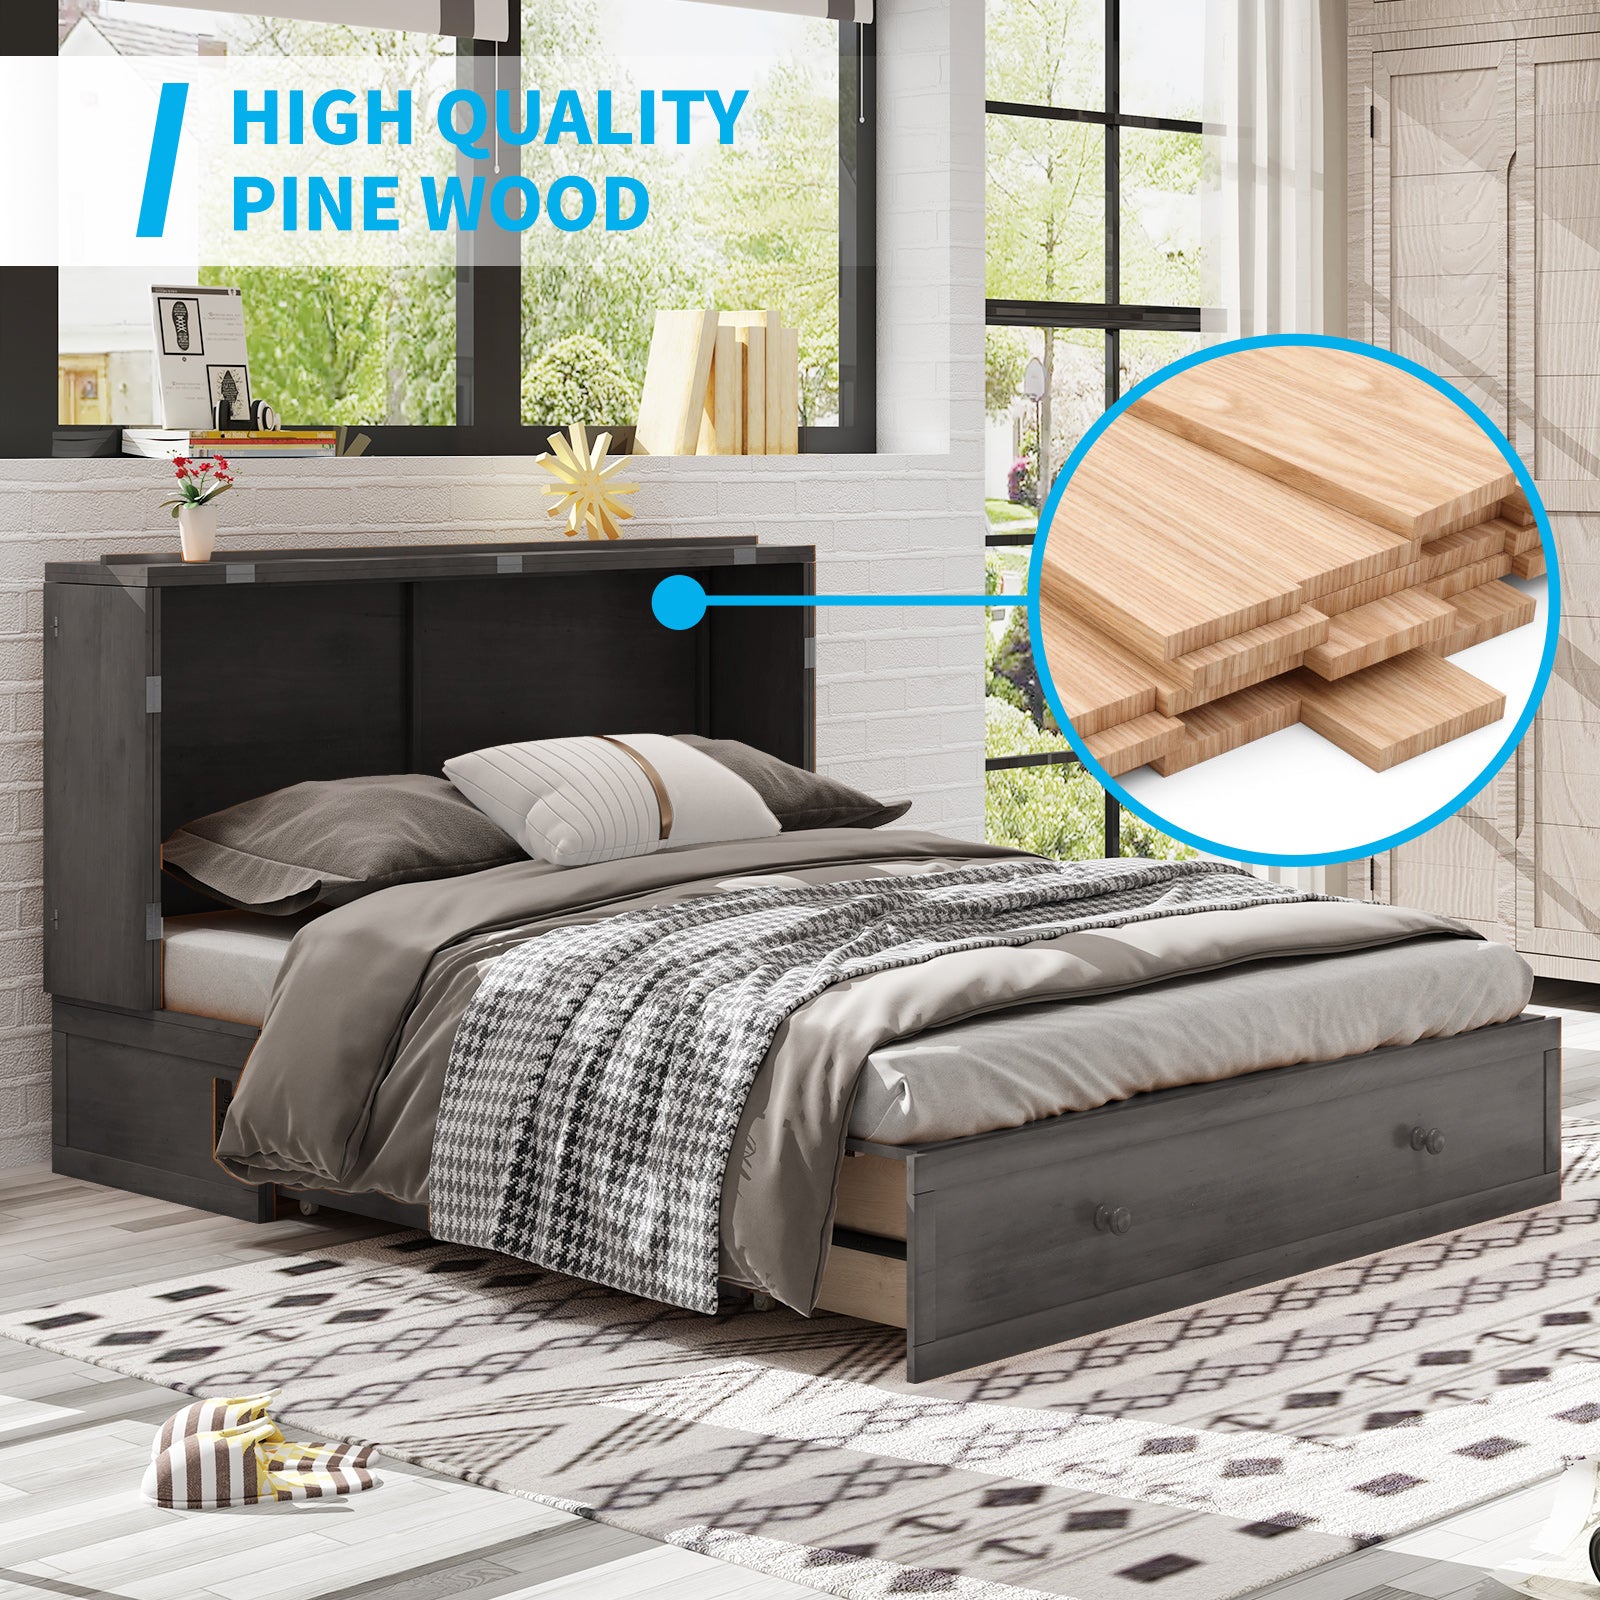 Mjkone Queen Modern Murphy Bed With Foldable Mattress